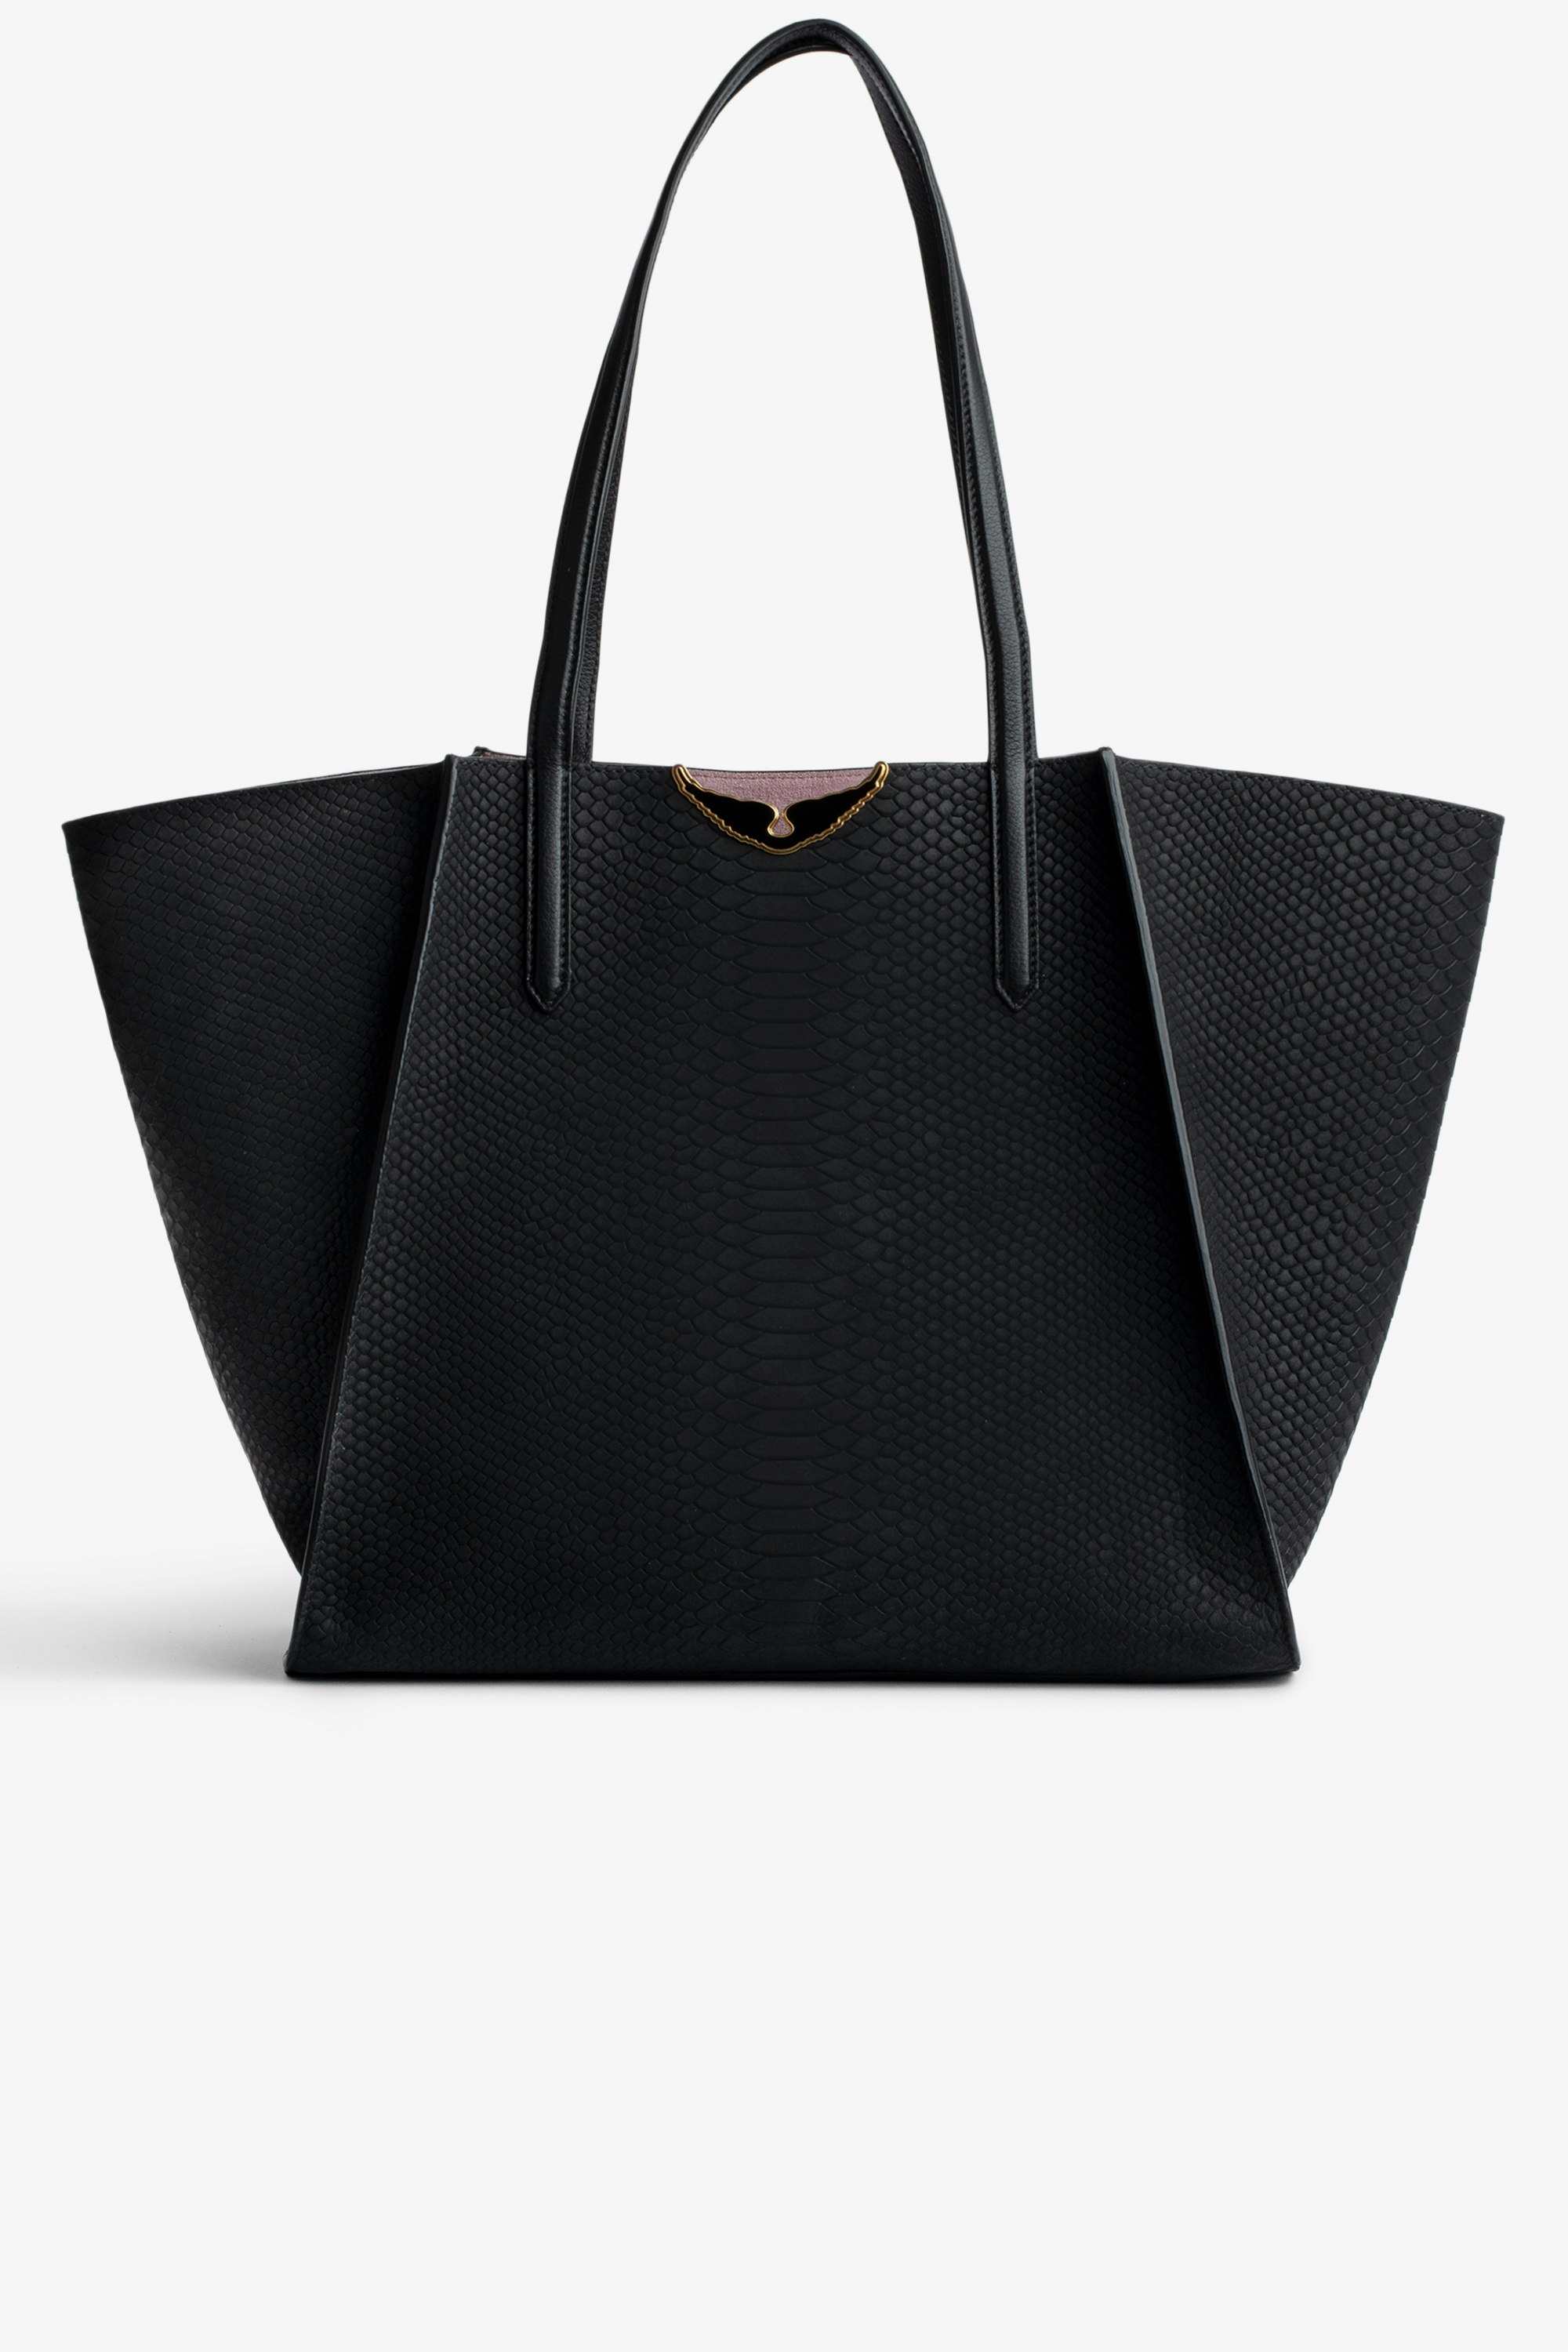 Tasche Le Borderline Soft Savage  Damen-Shopper zum Wenden aus schwarzem Leder in Python-Optik und rosafarbenem Veloursleder mit schwarz lackierten Flügeln.